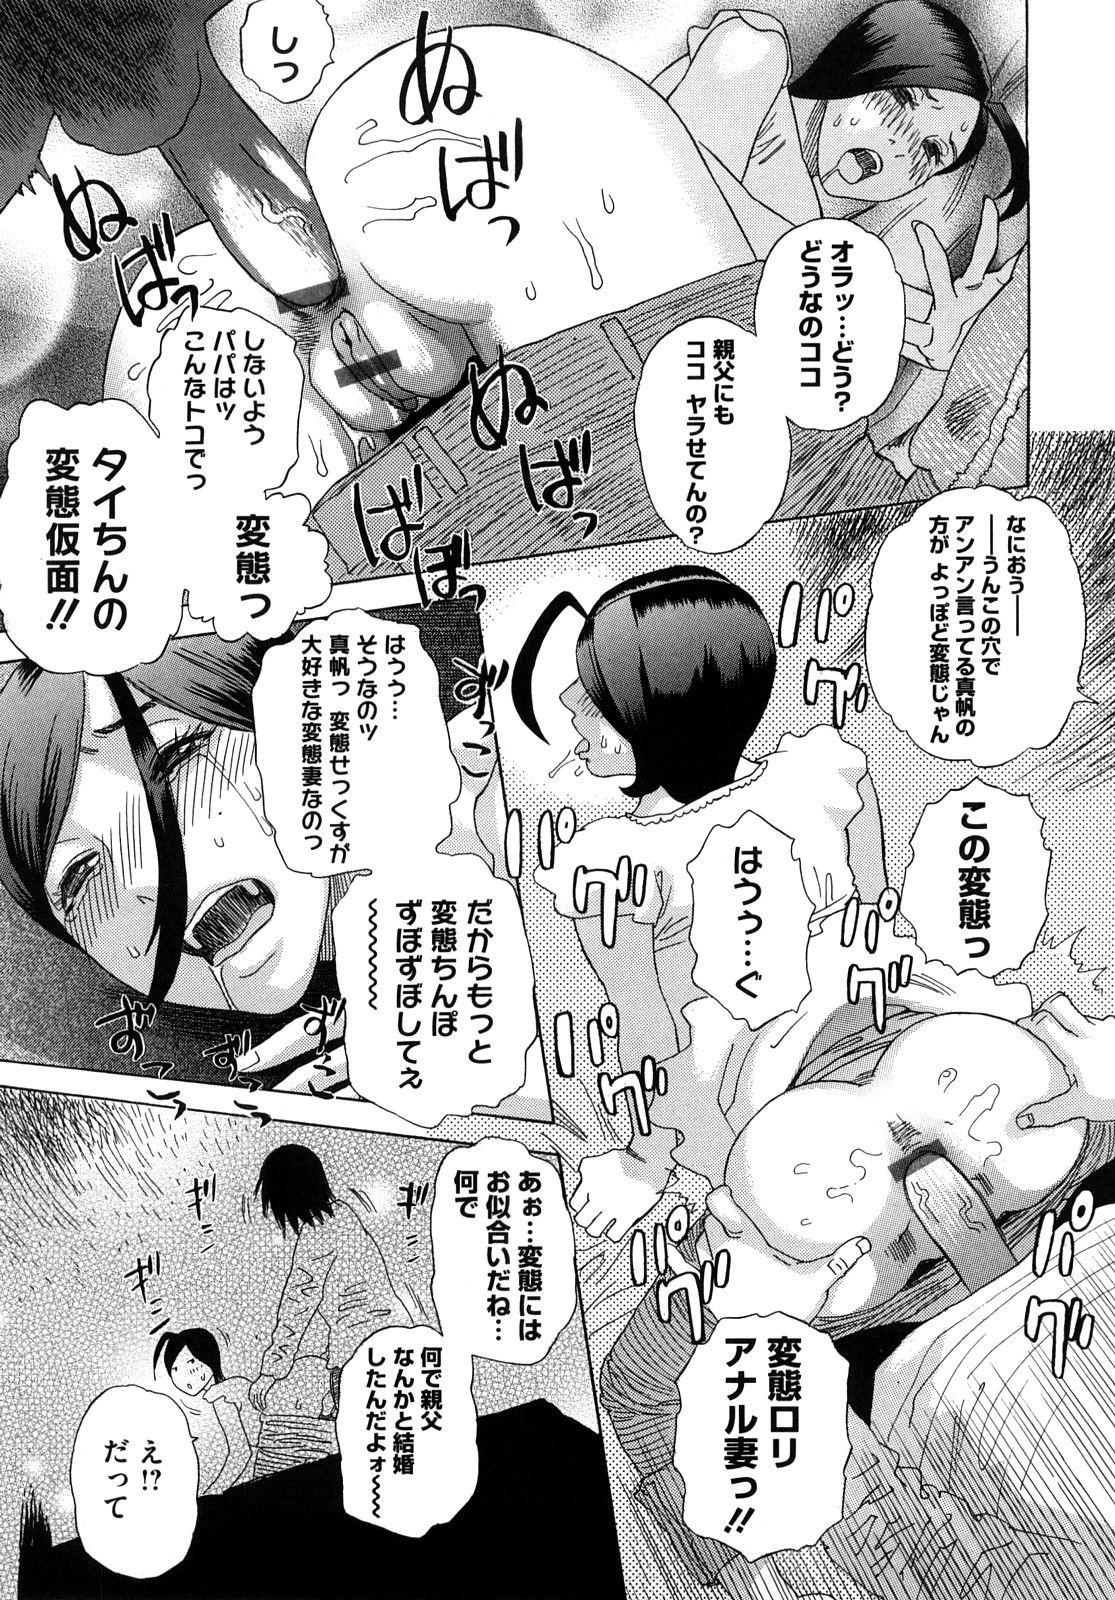 [Tenjiku Rounin] Izumi-san no Kisetsu 23